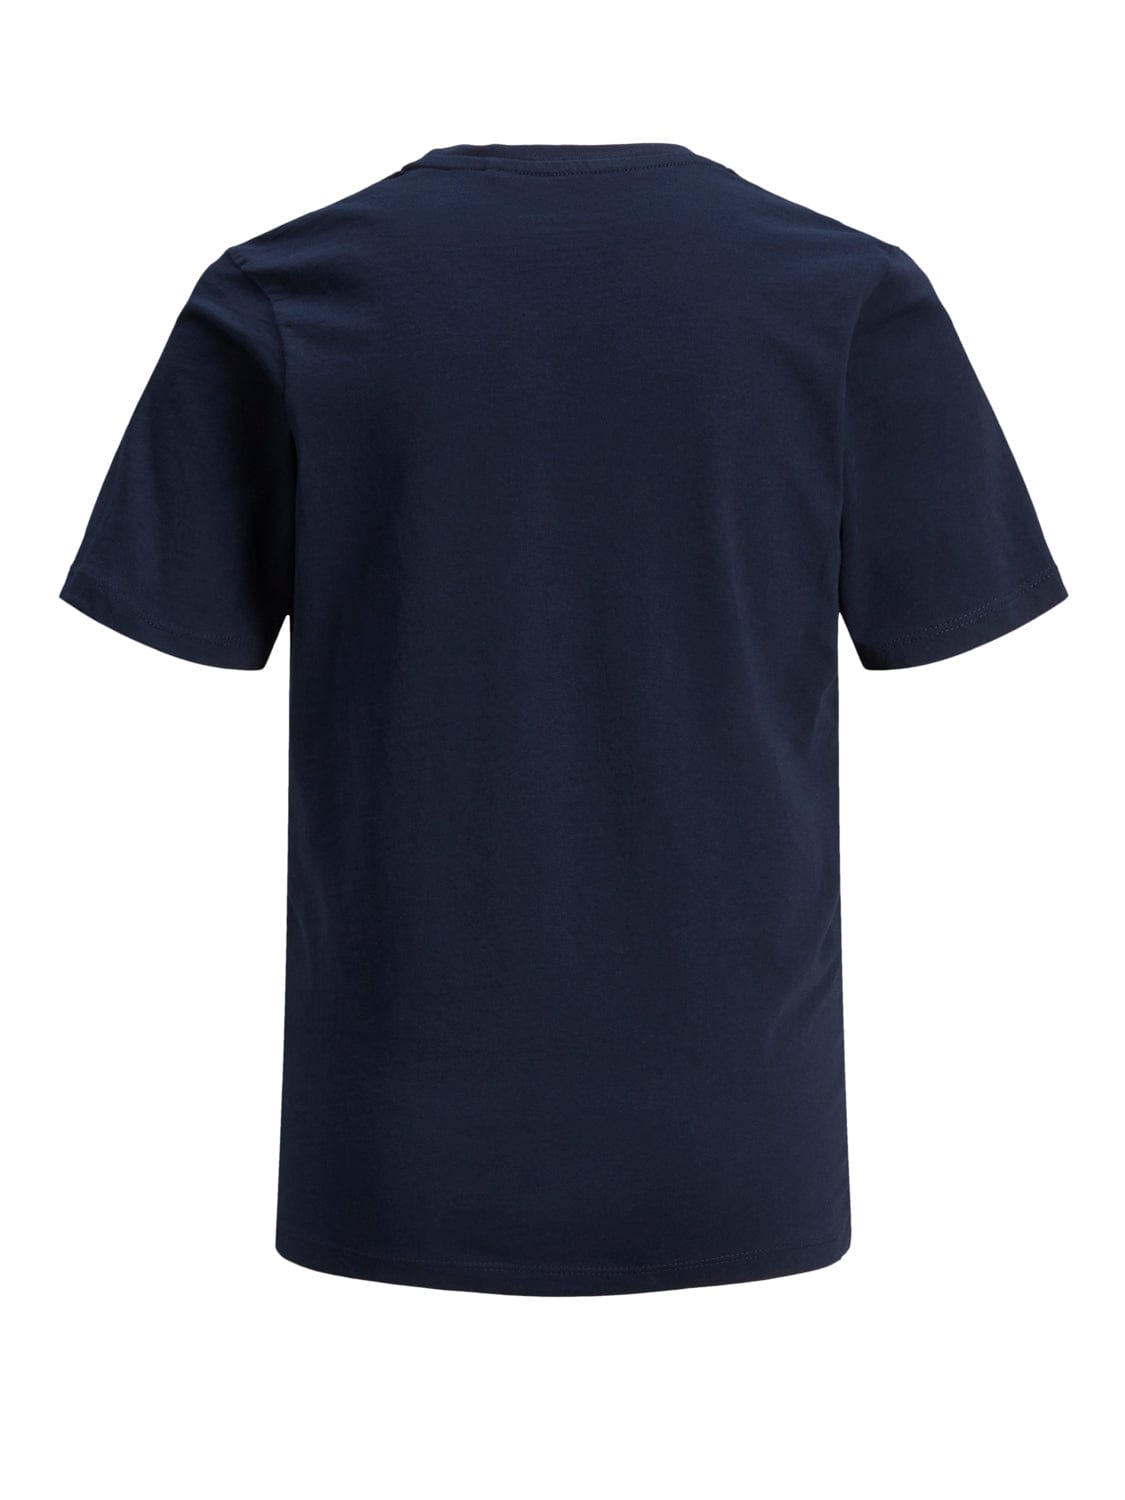 Camiseta JUNIOR Azul marino - CORP